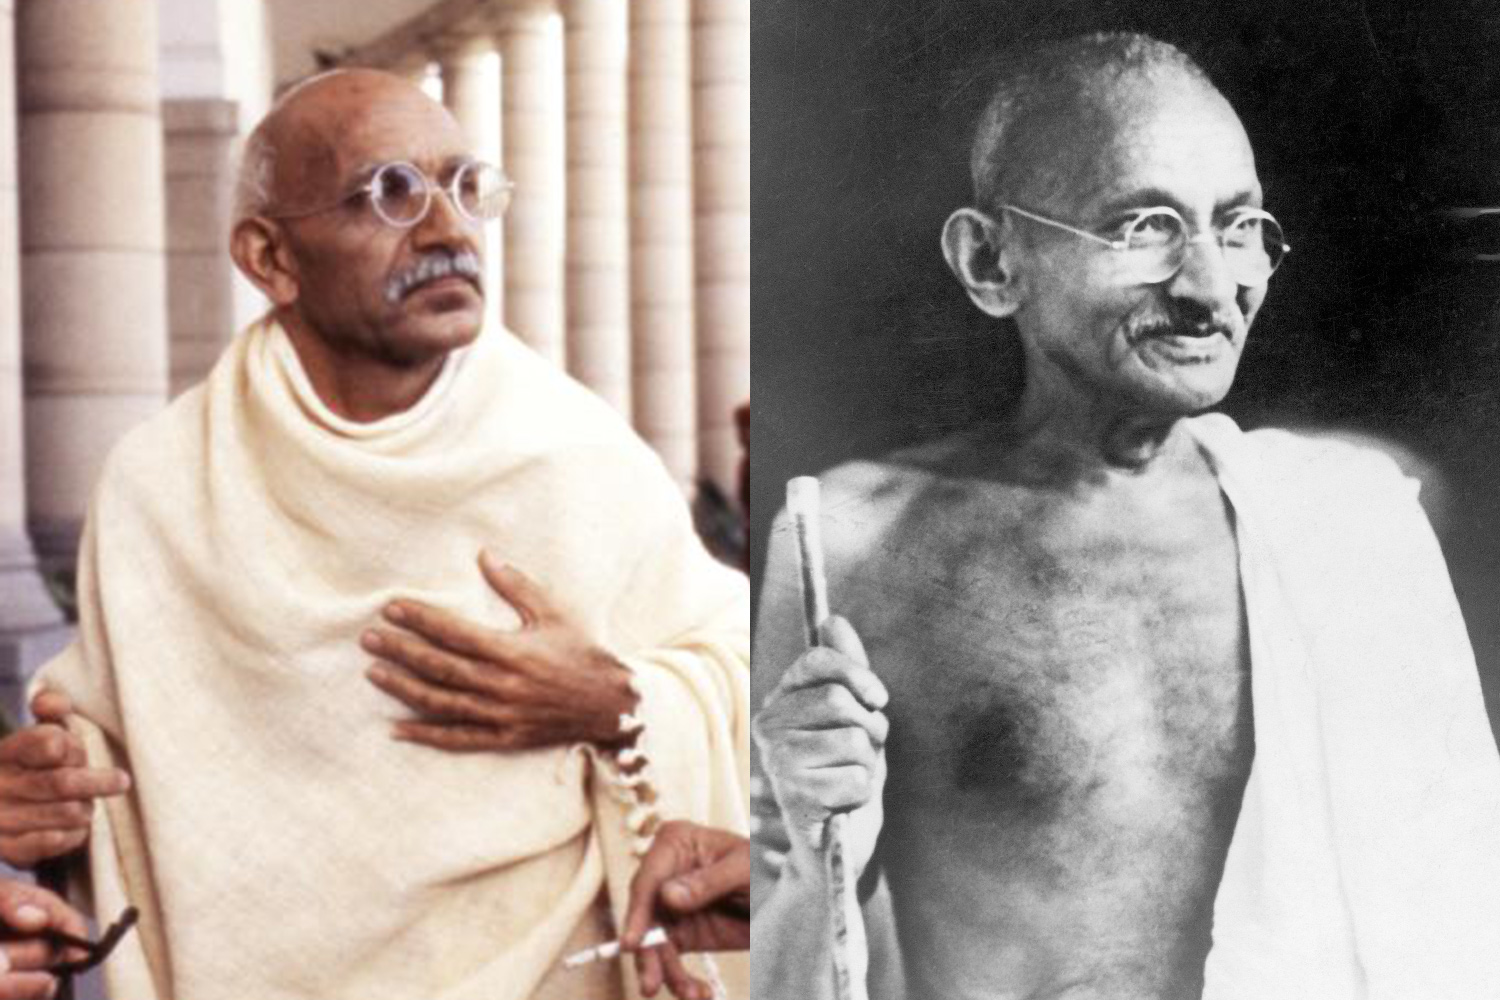 Ben Kingsley plays Gandhi in Gandhi.